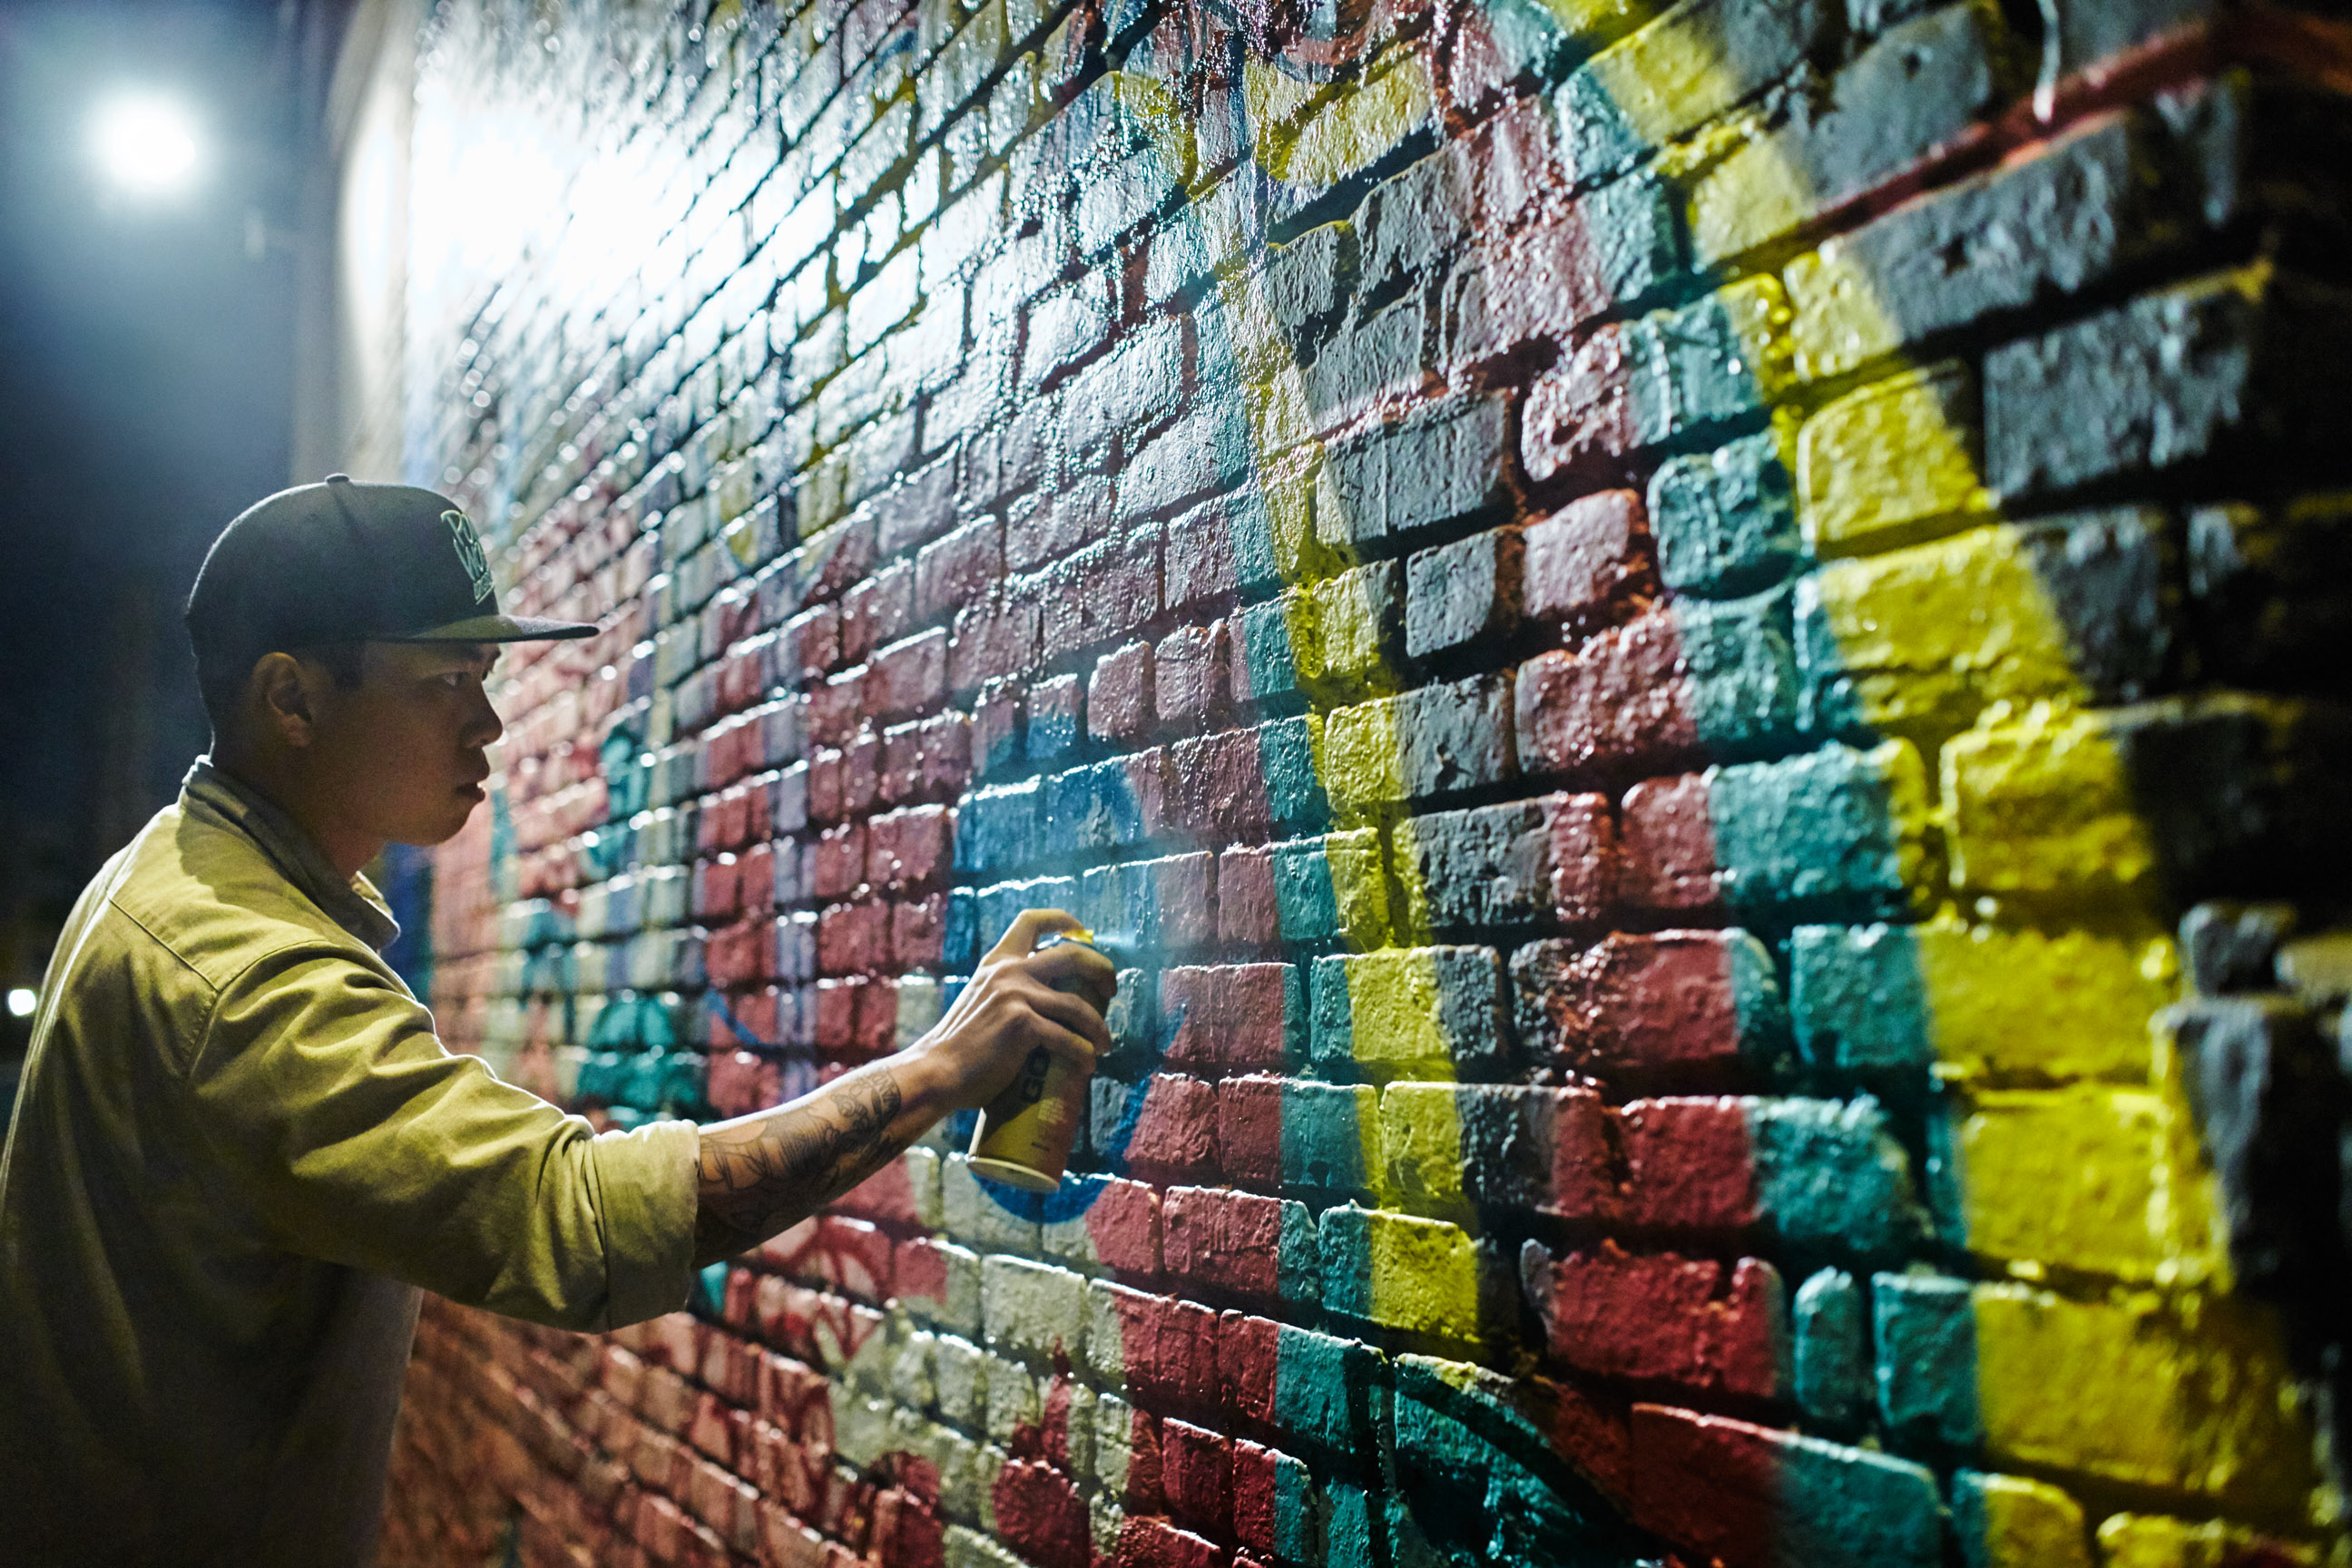 Jasper Wong creating his mural.